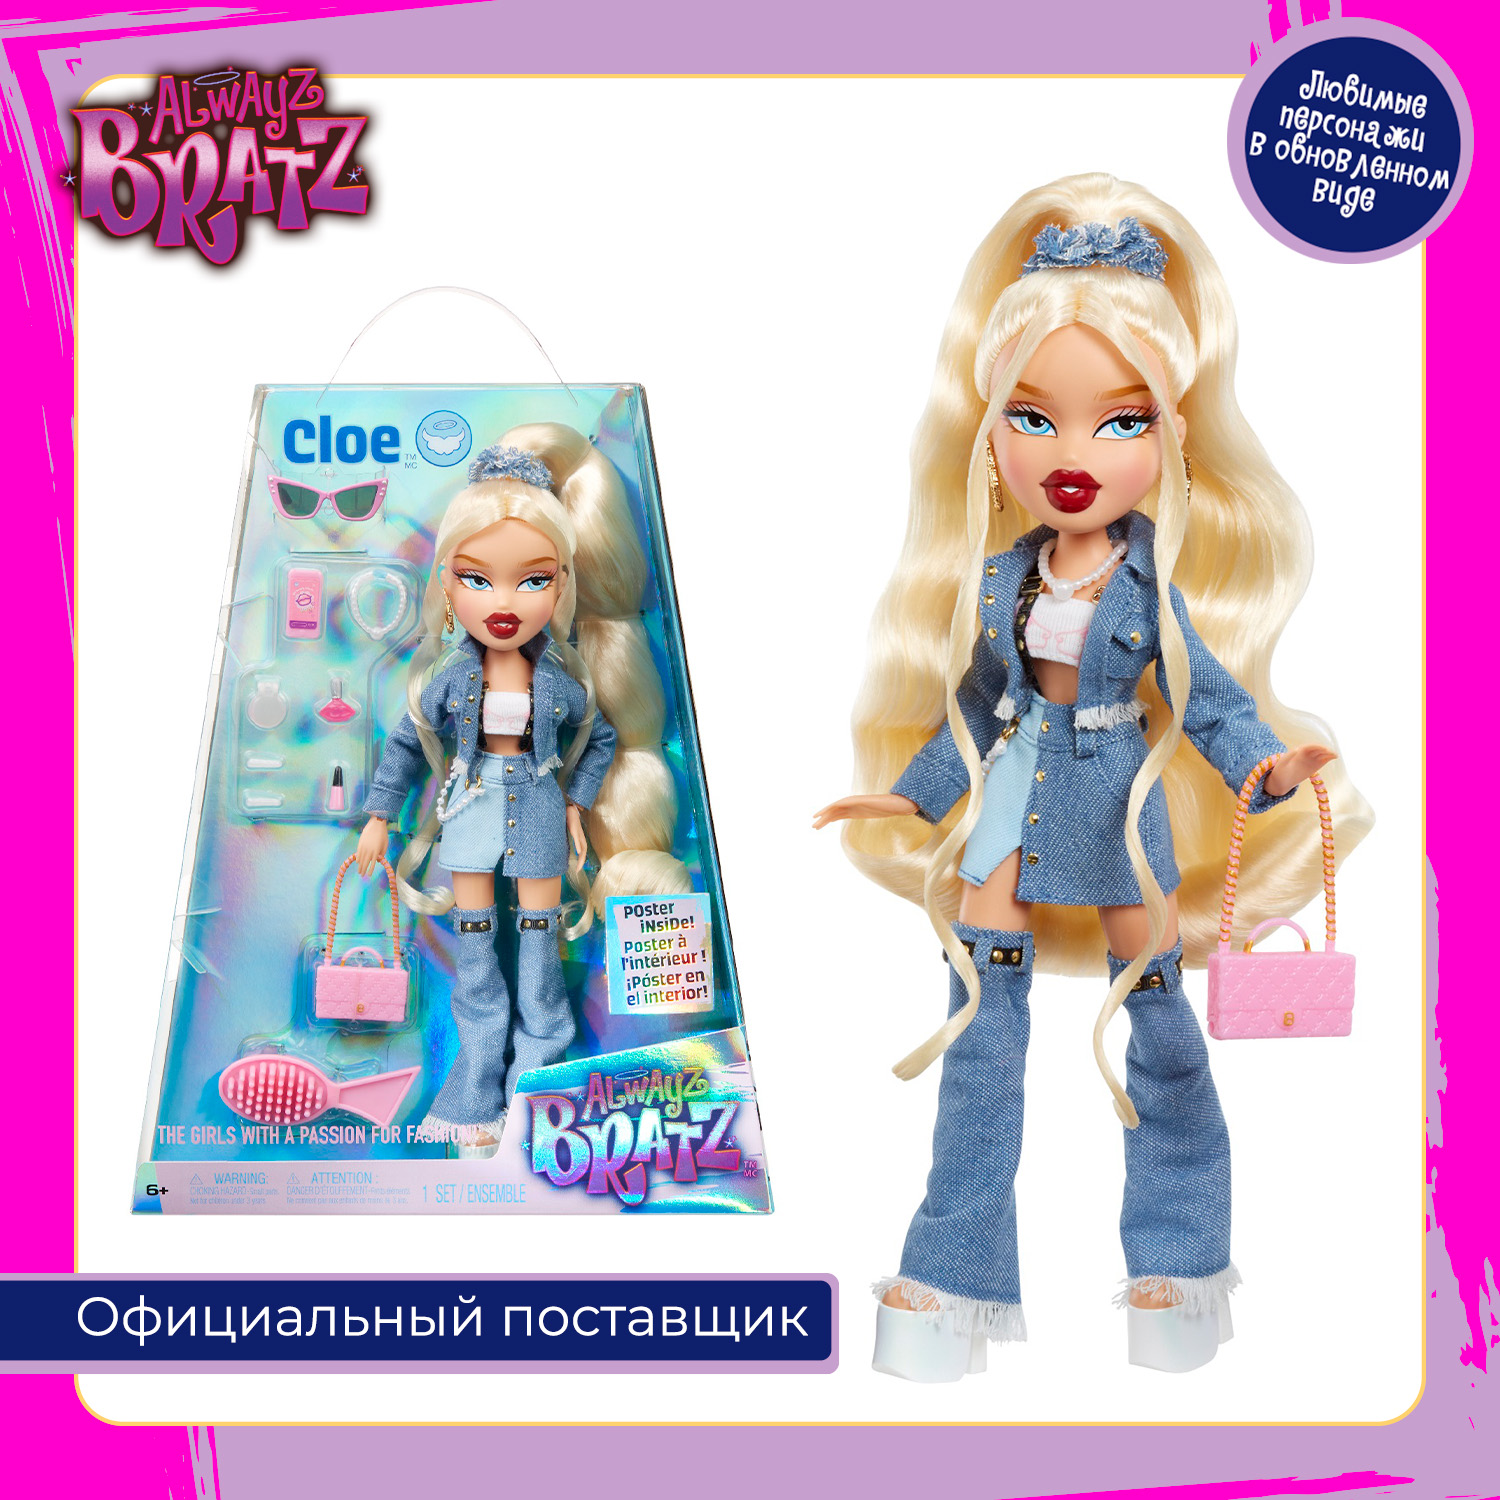 Купить кукла Bratz Хлоя Alwayz Bratz с аксессуарами, цены на Мегамаркет